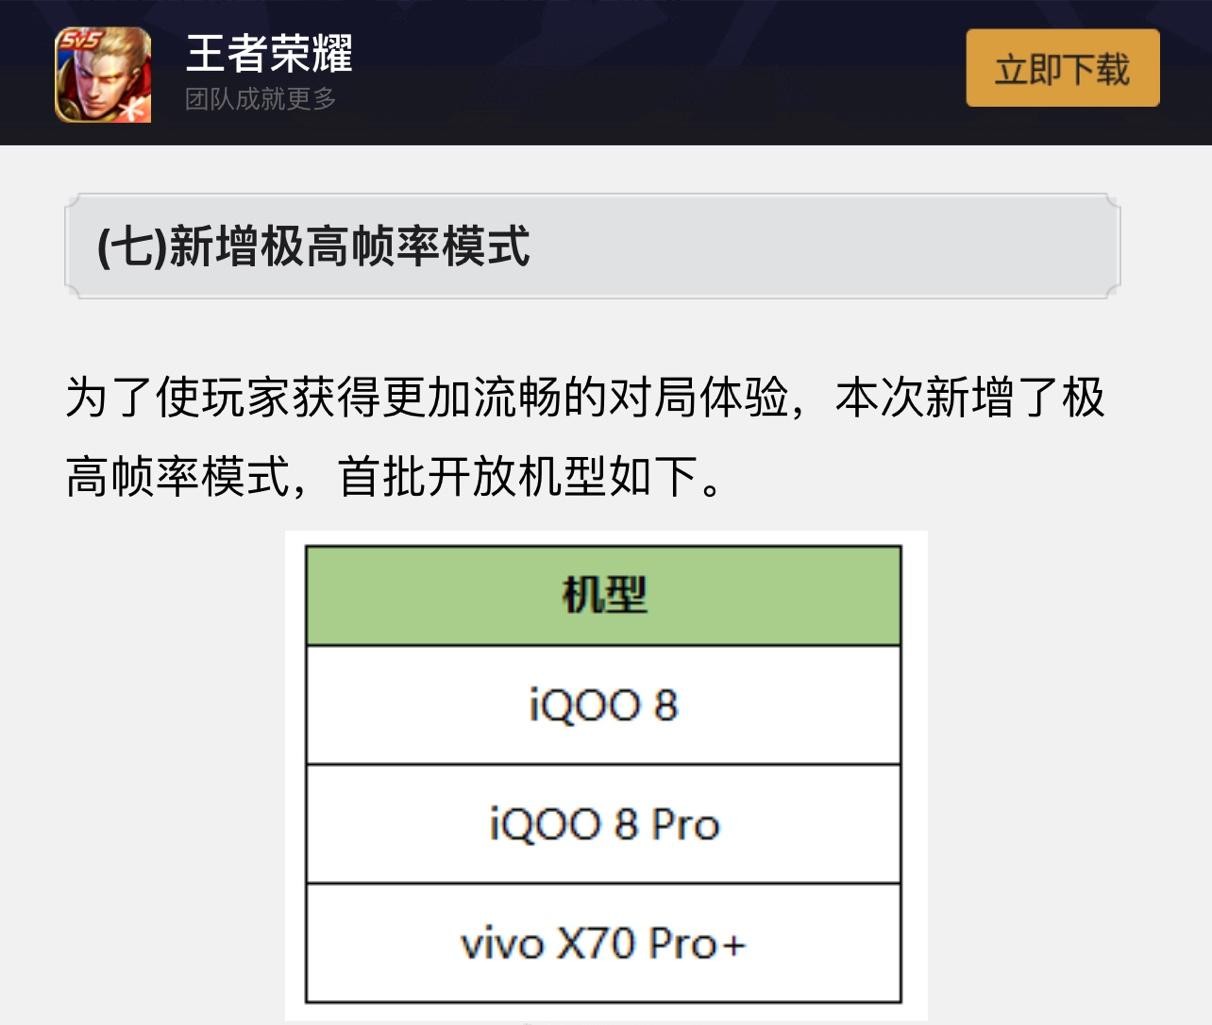 新賽季上分神器 vivo X70 Pro+首批適配《王者榮耀》120Hz極高幀率